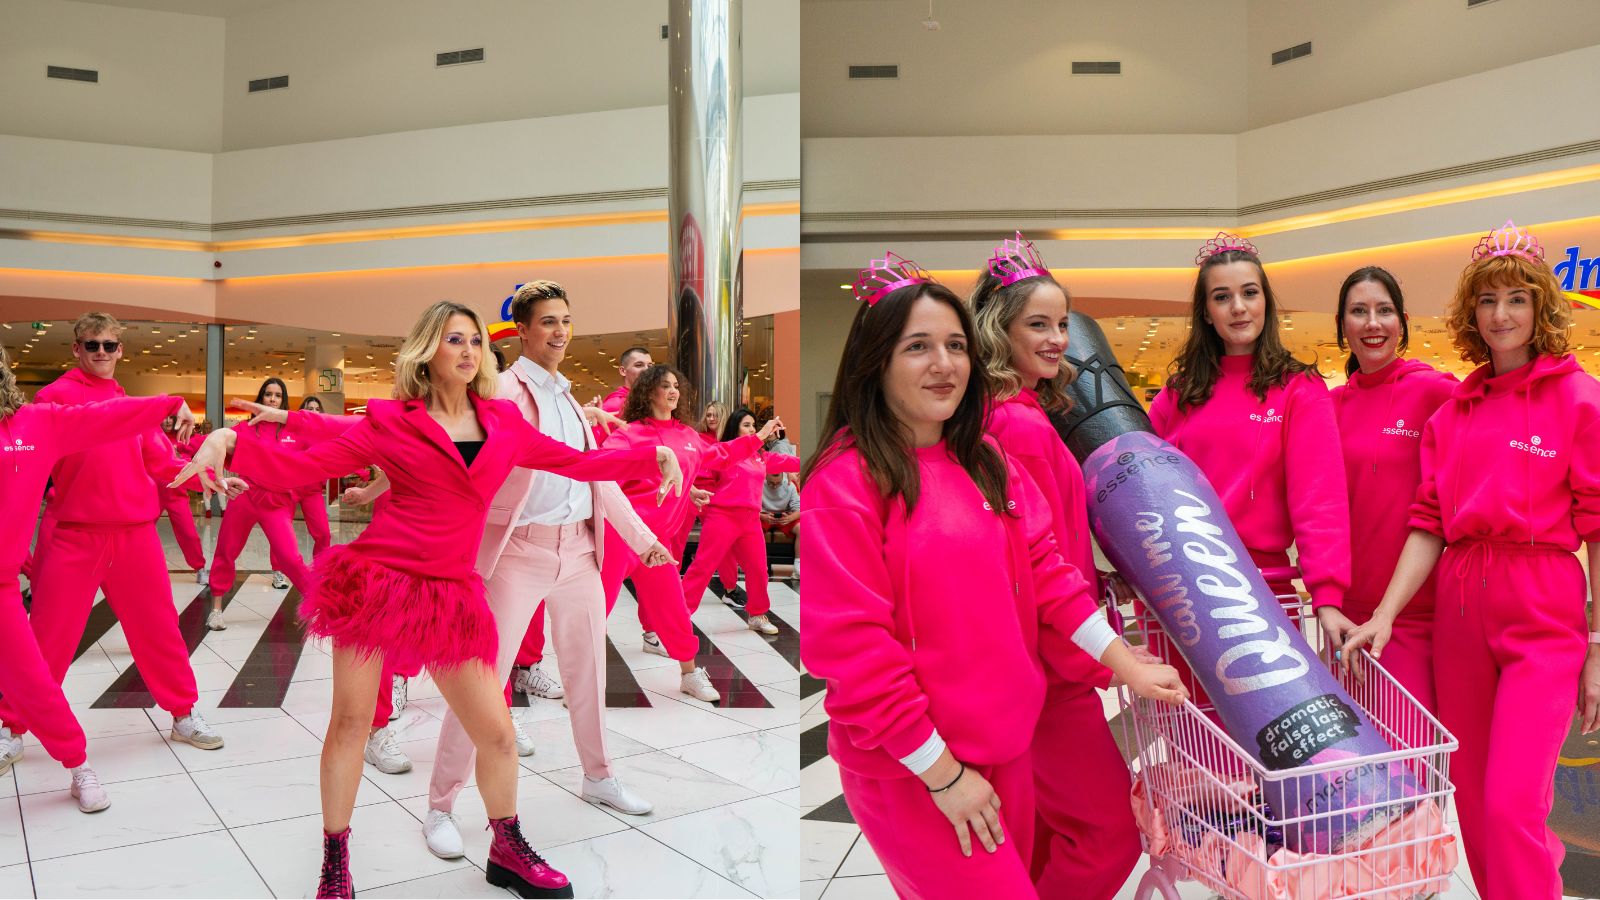 Flash Mob Dance: Ljubljano je zavzela razplesana “kraljevska” družina. Znana koreografa sta pripravila pravi plesni spektakel